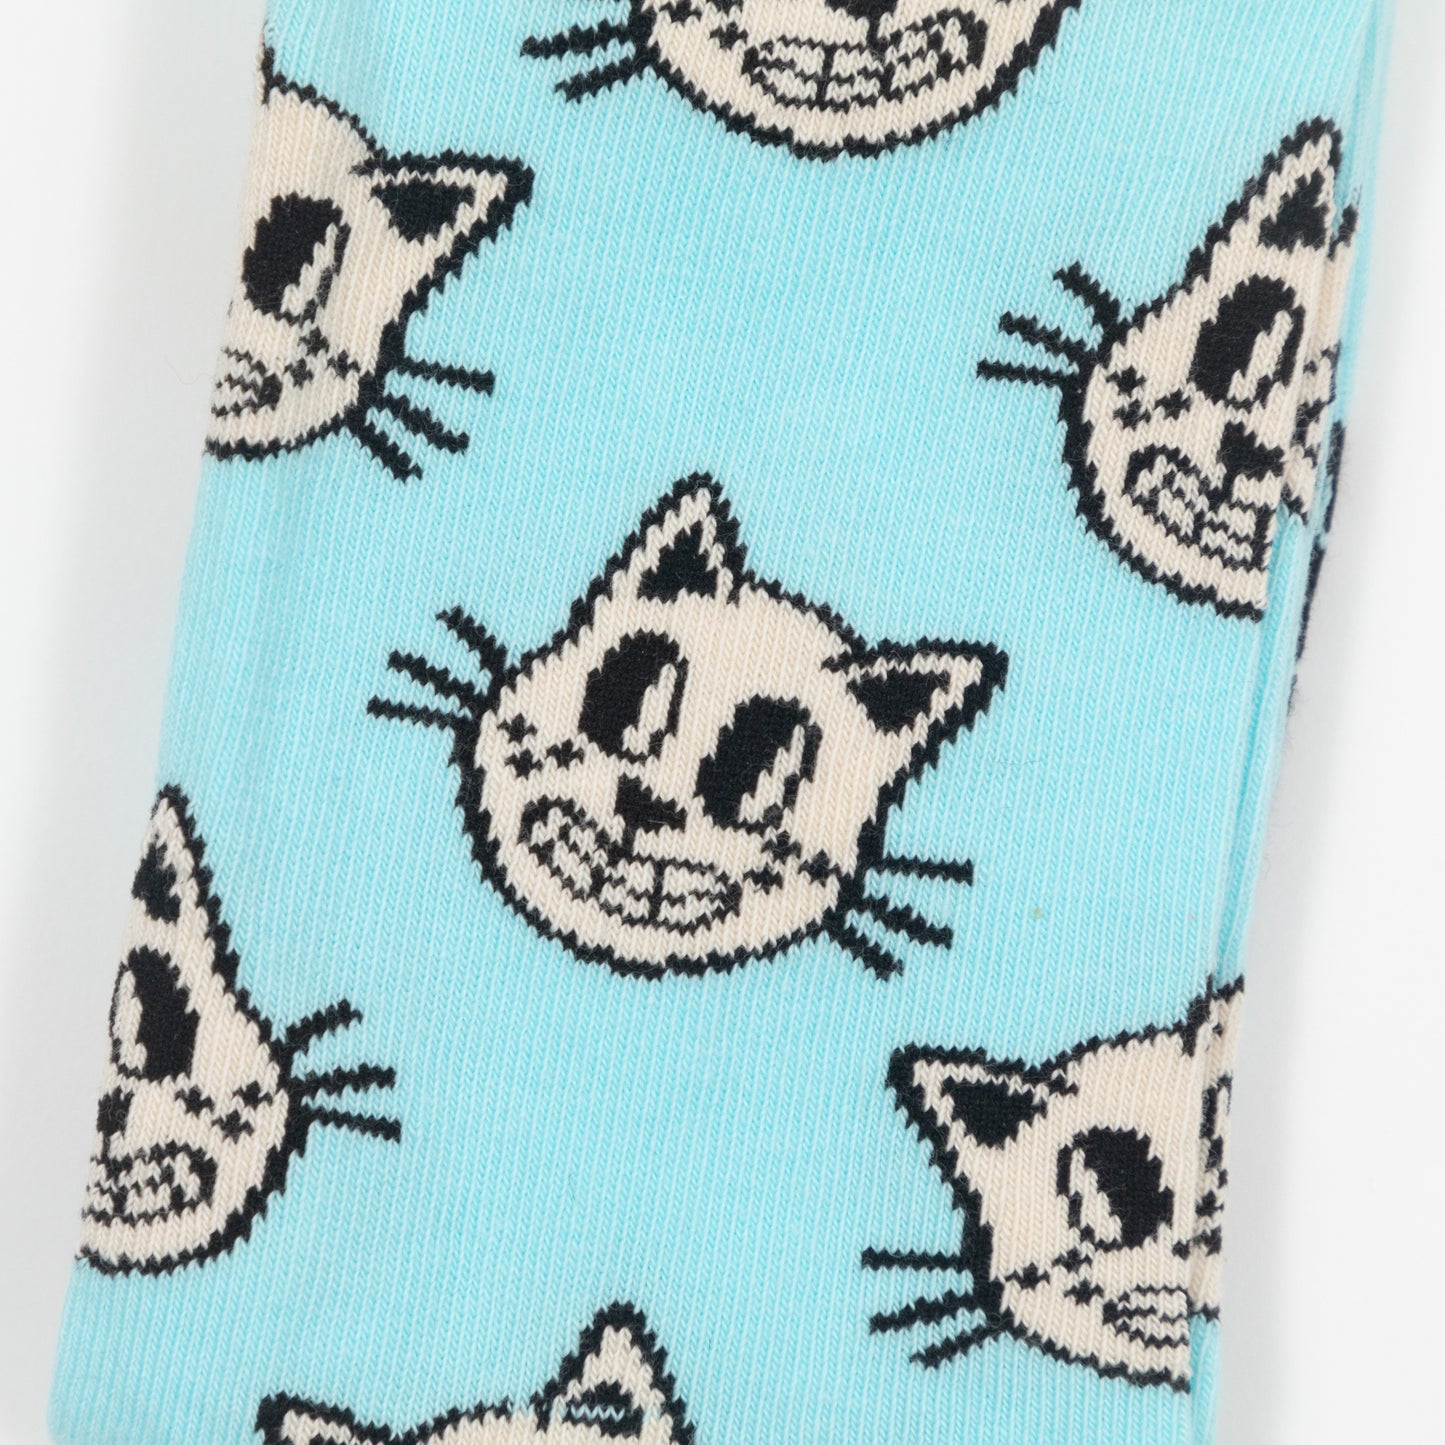 HAPPY SOCKS Cat Socks in LIGHT BLUE